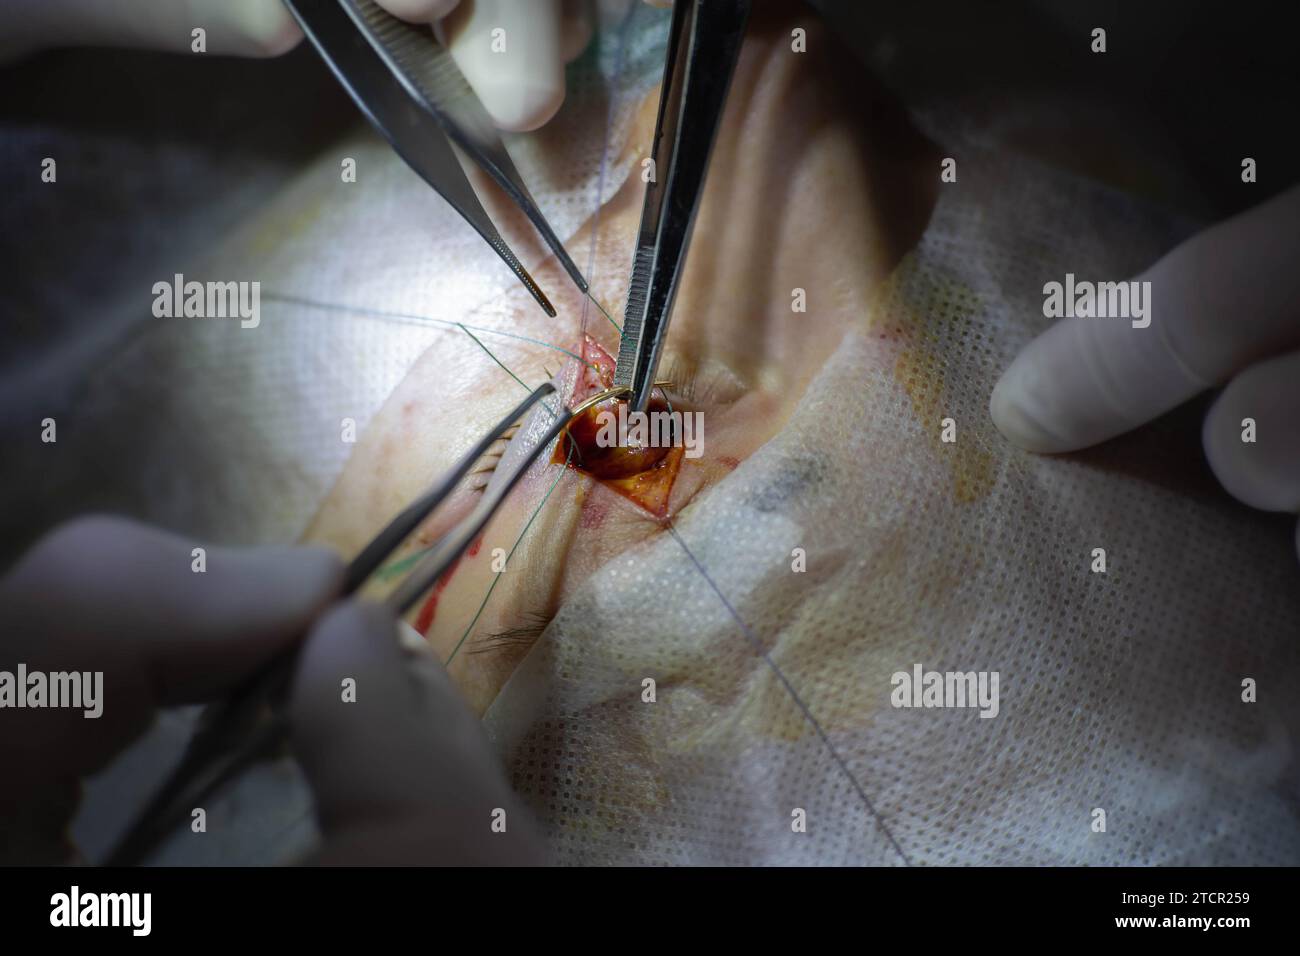 Einzigartige chirurgische Operation bei Neuritis des Nervus facialis, Implantation eines Goldimplantats in die Augenlider, bevor sich das Auge nicht schließt. Goldenes Augenlid Stockfoto